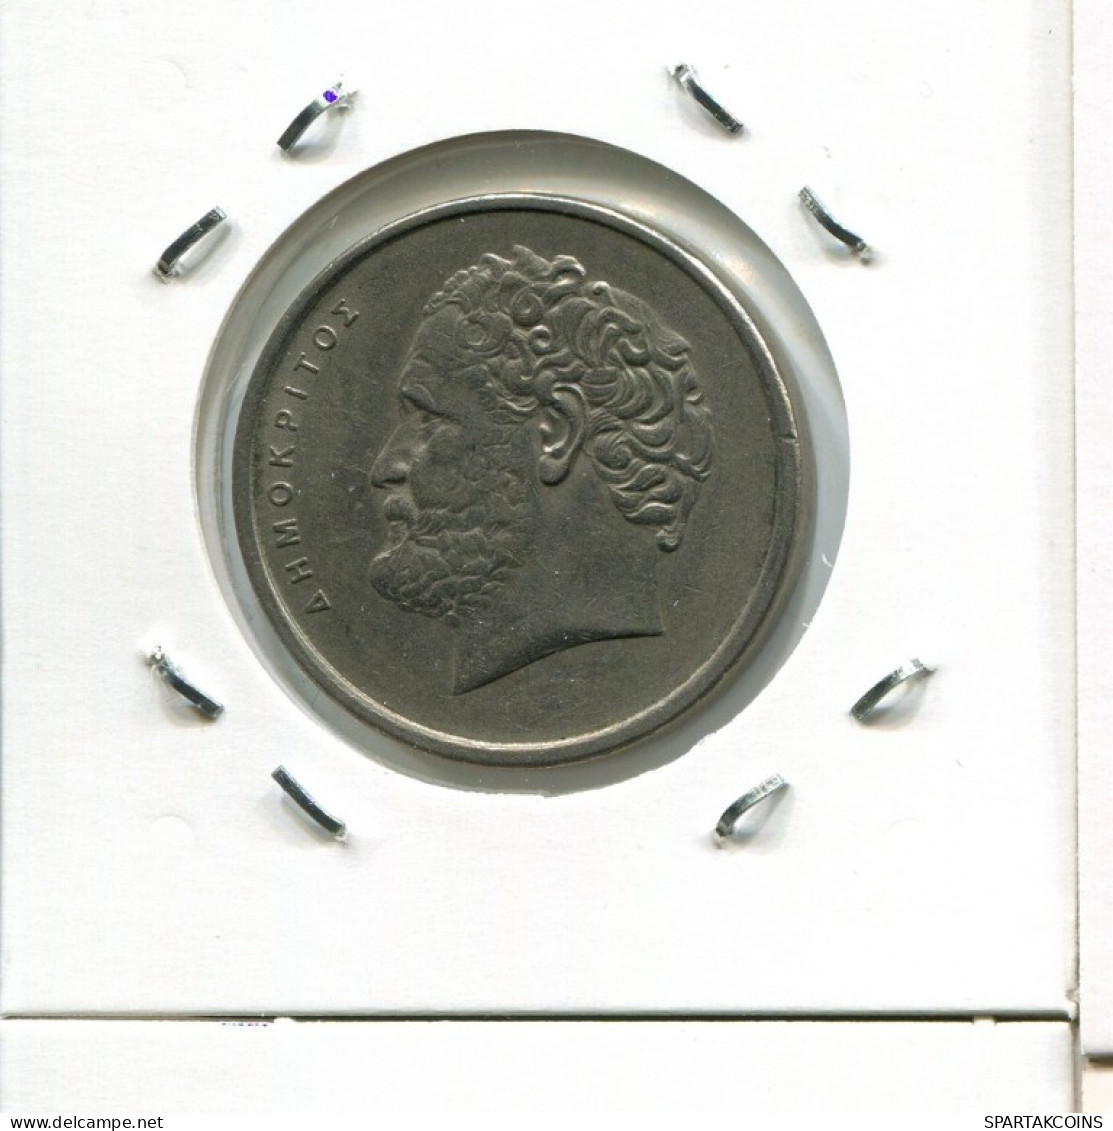 10 DRACHMES 1978 GRECIA GREECE Moneda #AK423.E.A - Greece